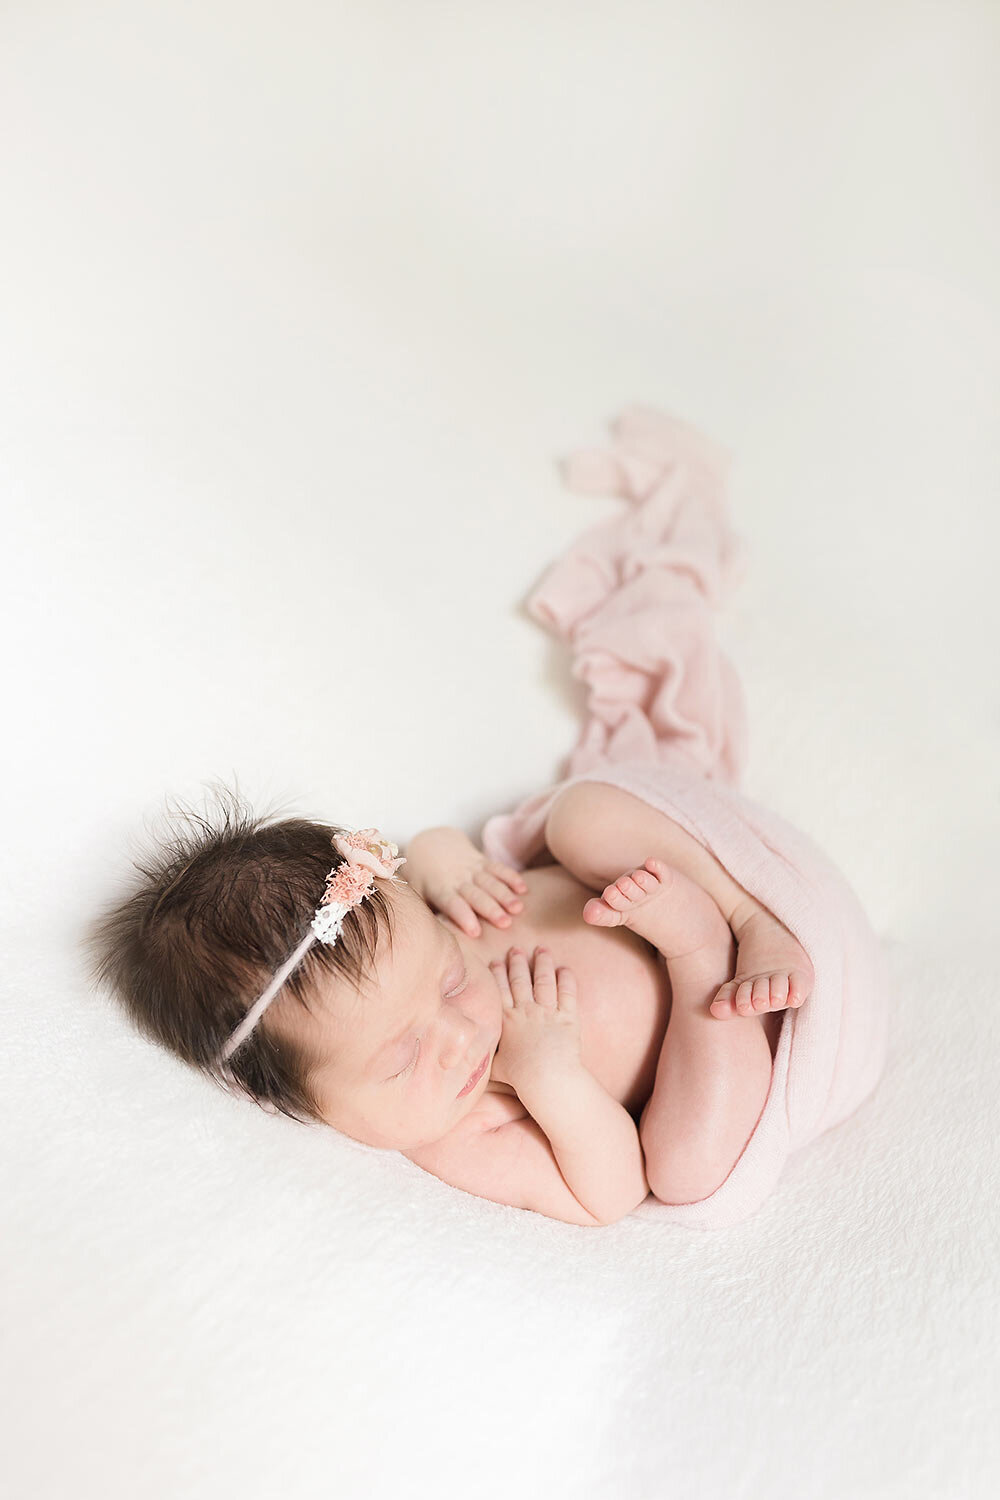 marietta newborn photographer